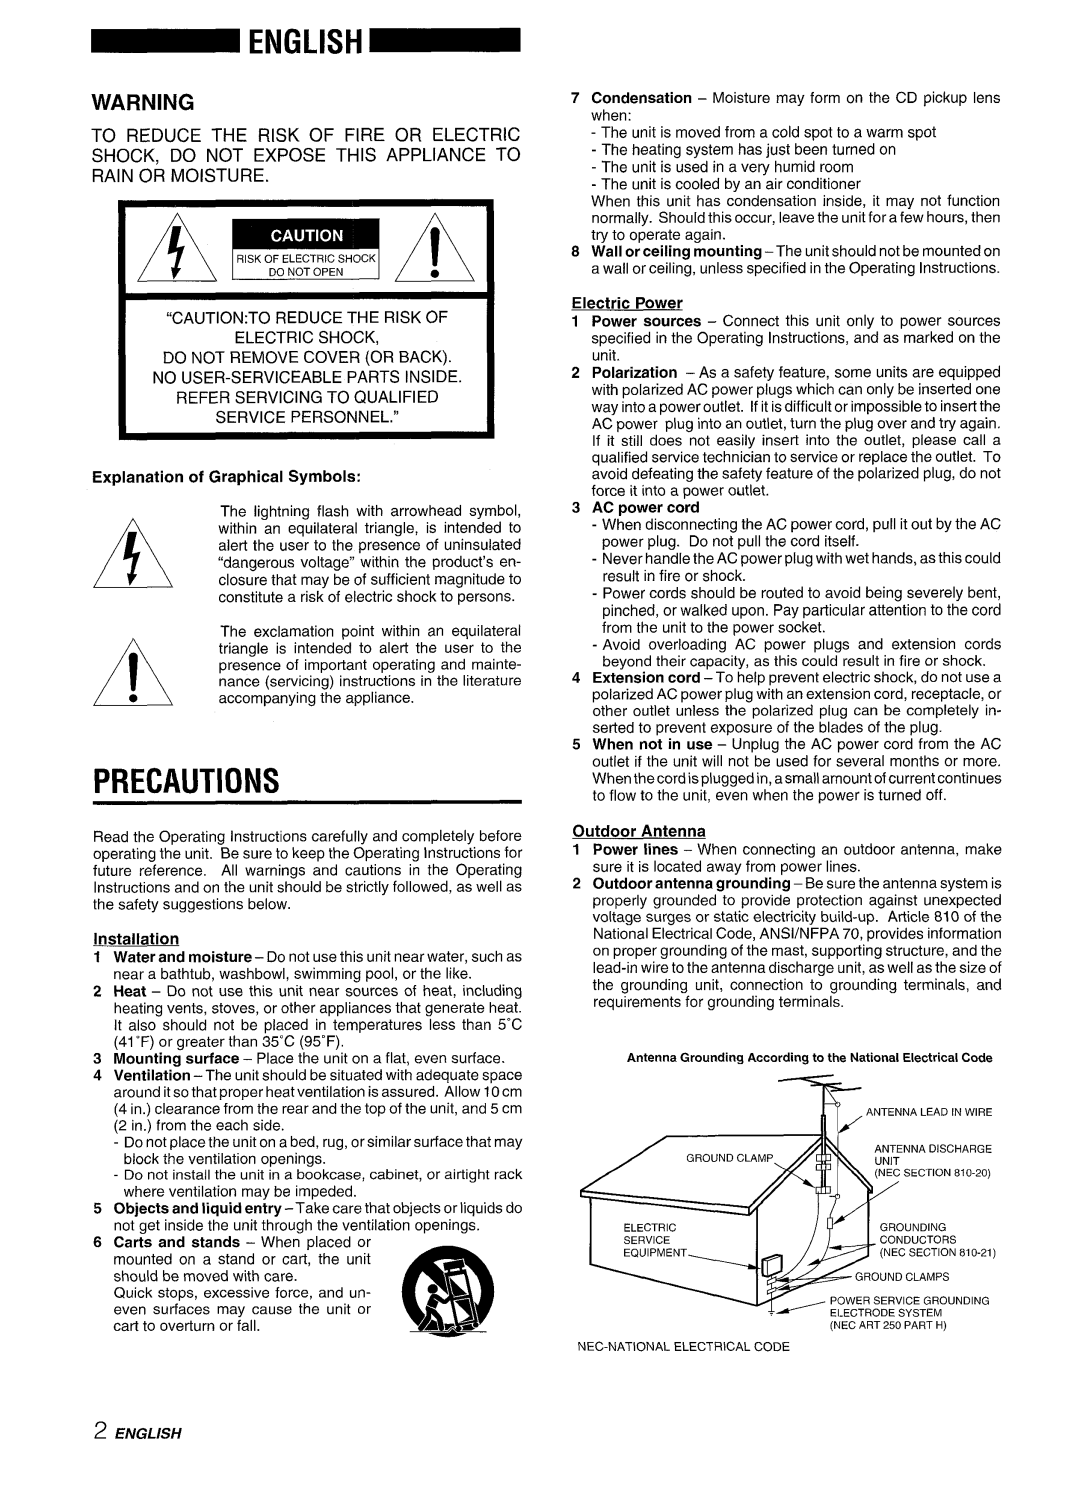 Aiwa XR-M88 manual Precautions, AC power cord, Outdoor Antenna, ANTENN,4’LEAOINWIRE, Am!!vh 